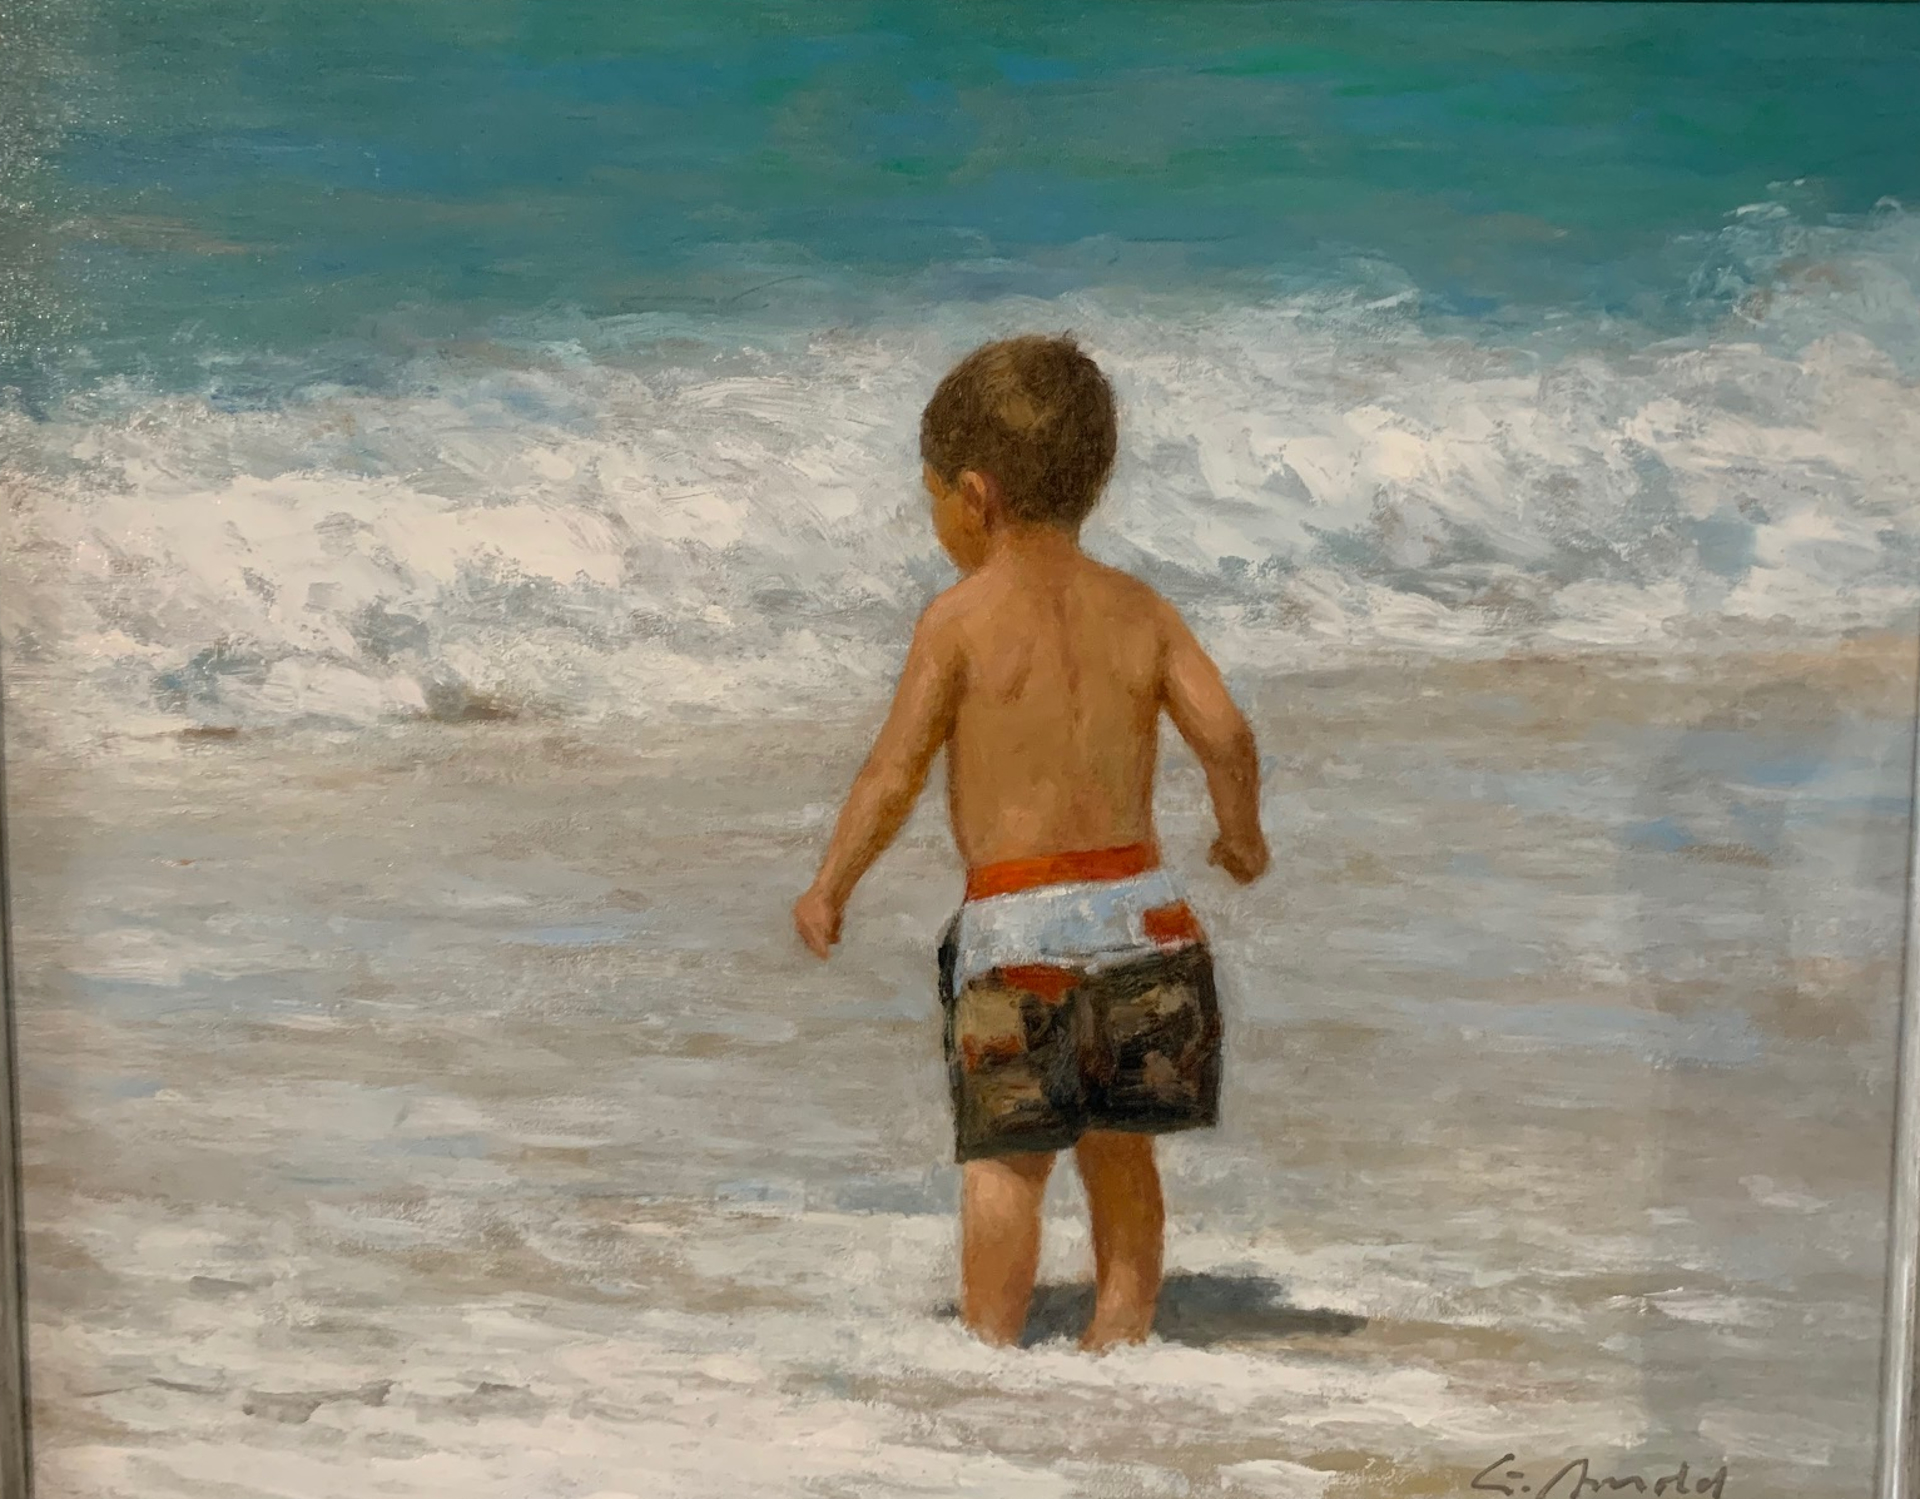 Boy on the Beach by Gerhard Arnold